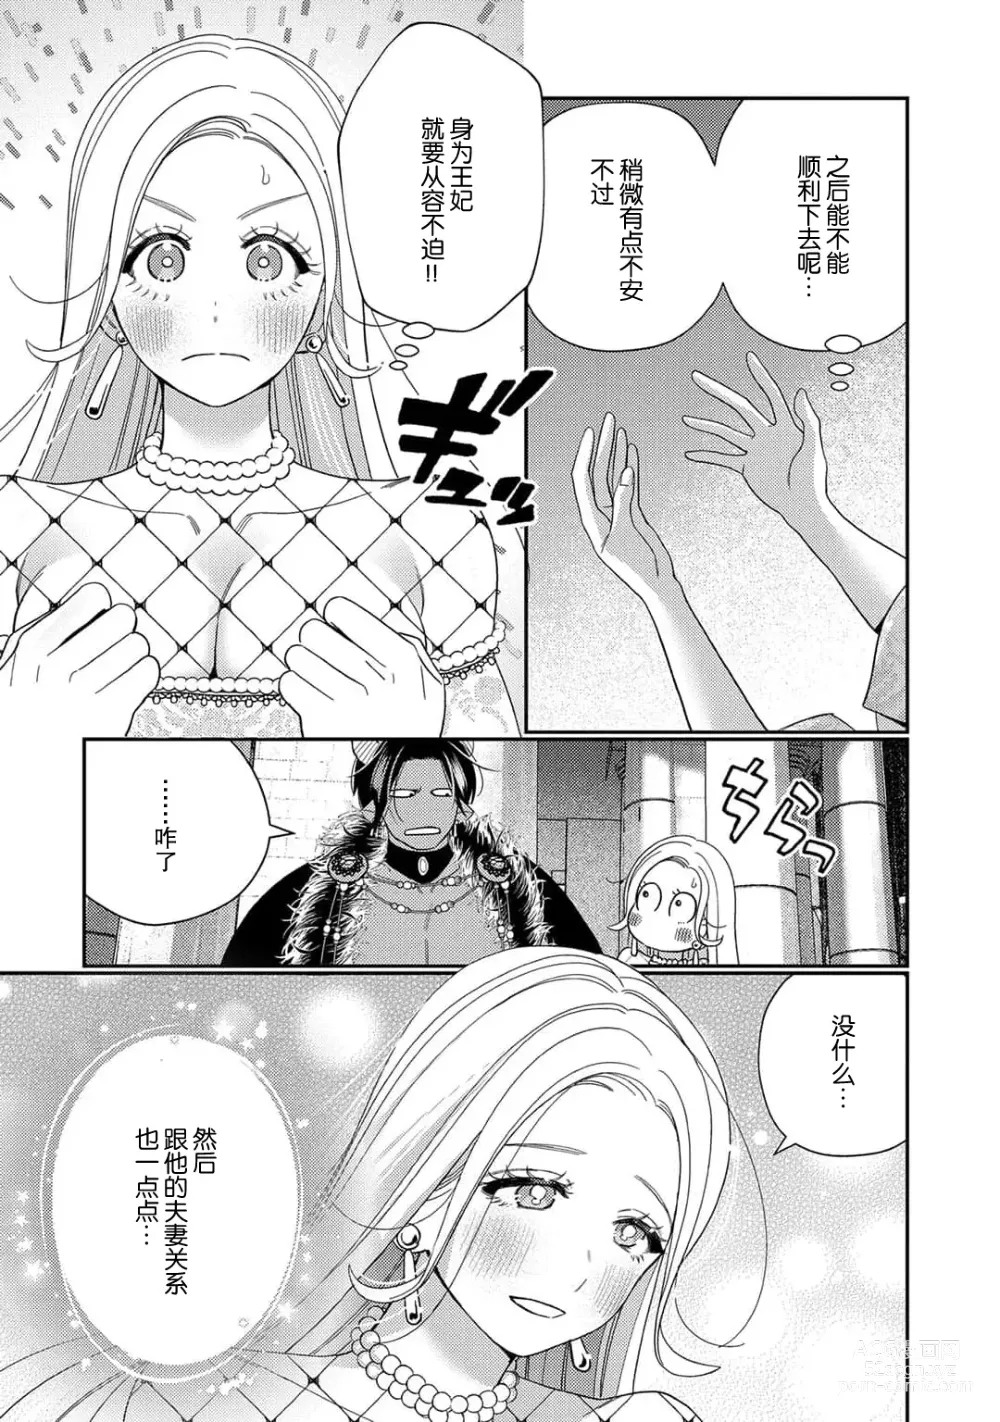 Page 211 of manga 转生成为恶役大小姐，迎接不H就会死的命运~与敌国国王的笼络联姻~ 1-5